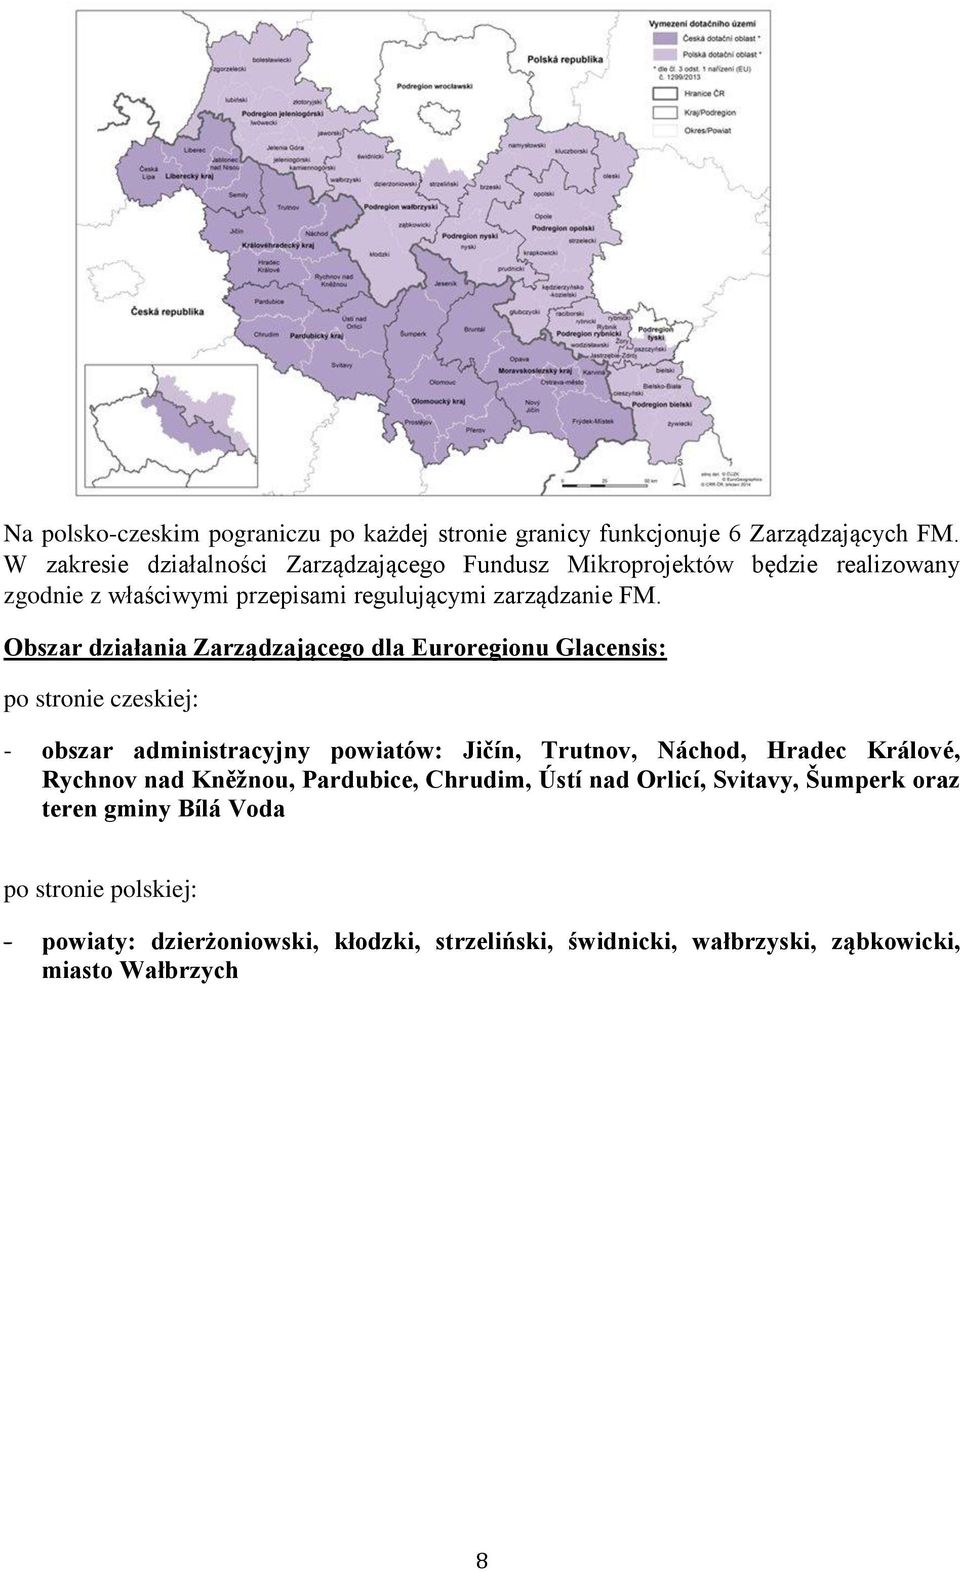 Obszar działania Zarządzającego dla Euroregionu Glacensis: po stronie czeskiej: - obszar administracyjny powiatów: Jičín, Trutnov, Náchod, Hradec